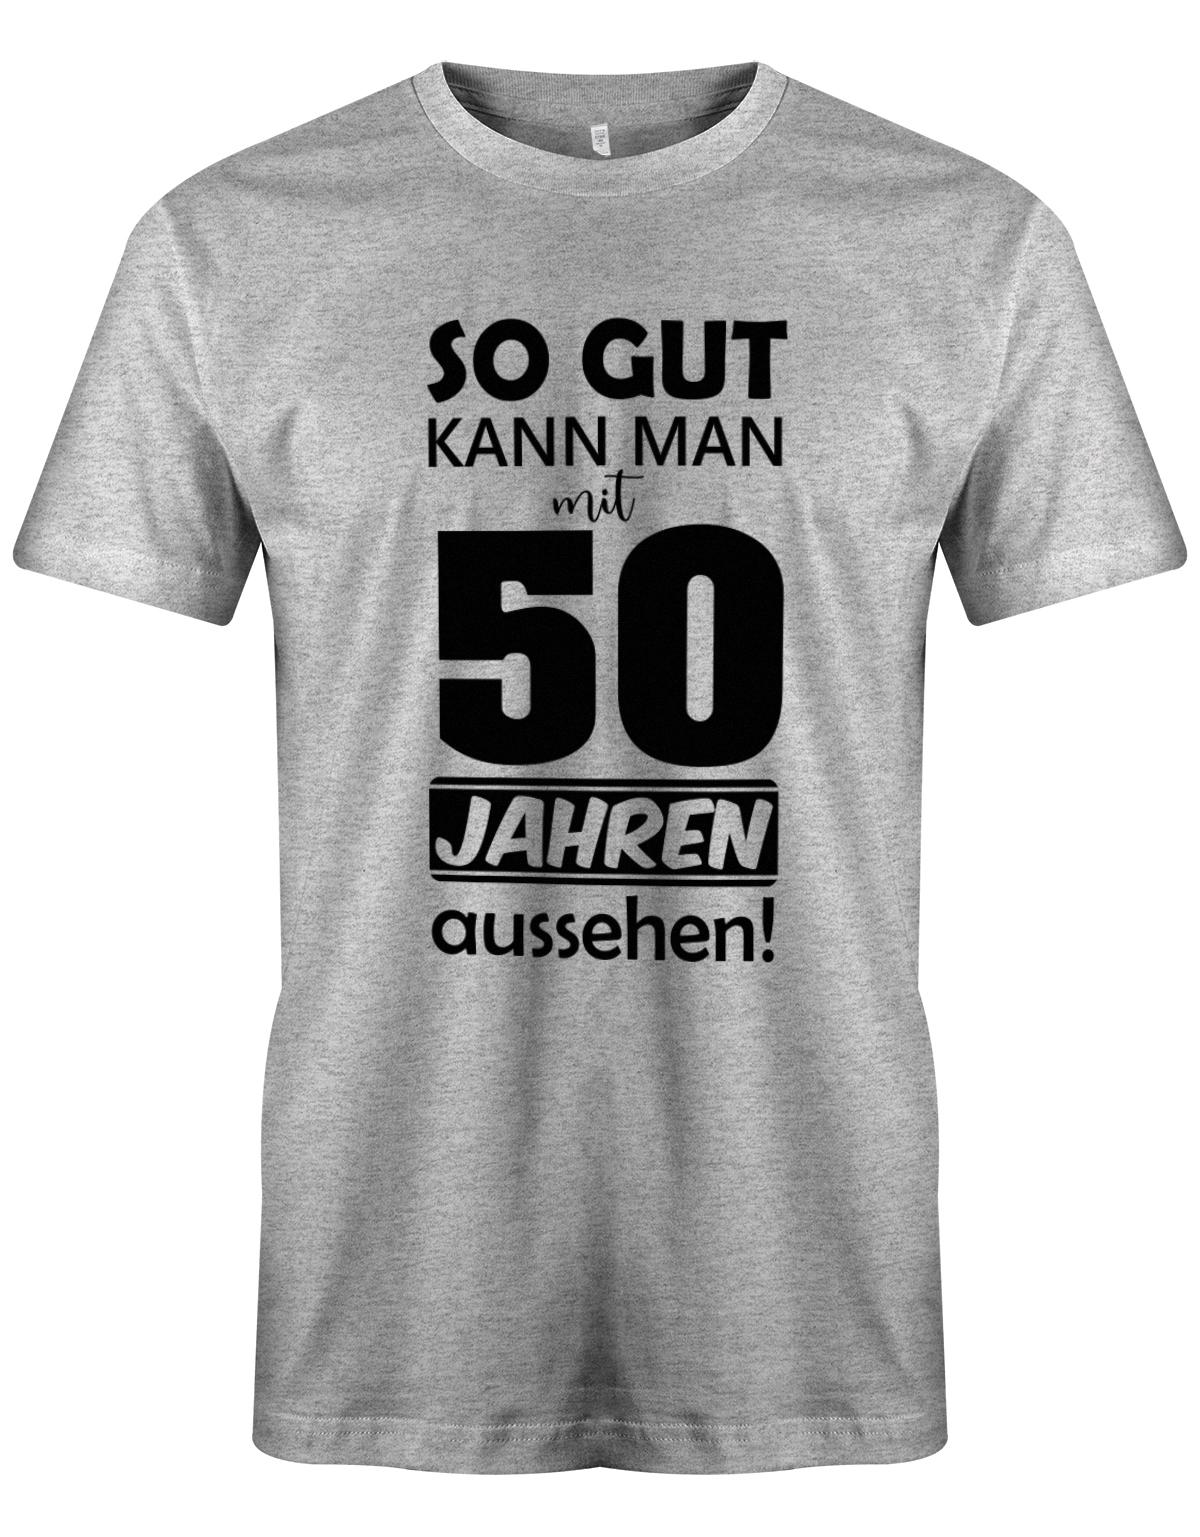 Lustiges T-Shirt zum 50. Geburtstag für den Mann Bedruckt mit So gut kann man mit 50 Jahren aussehen. Grau